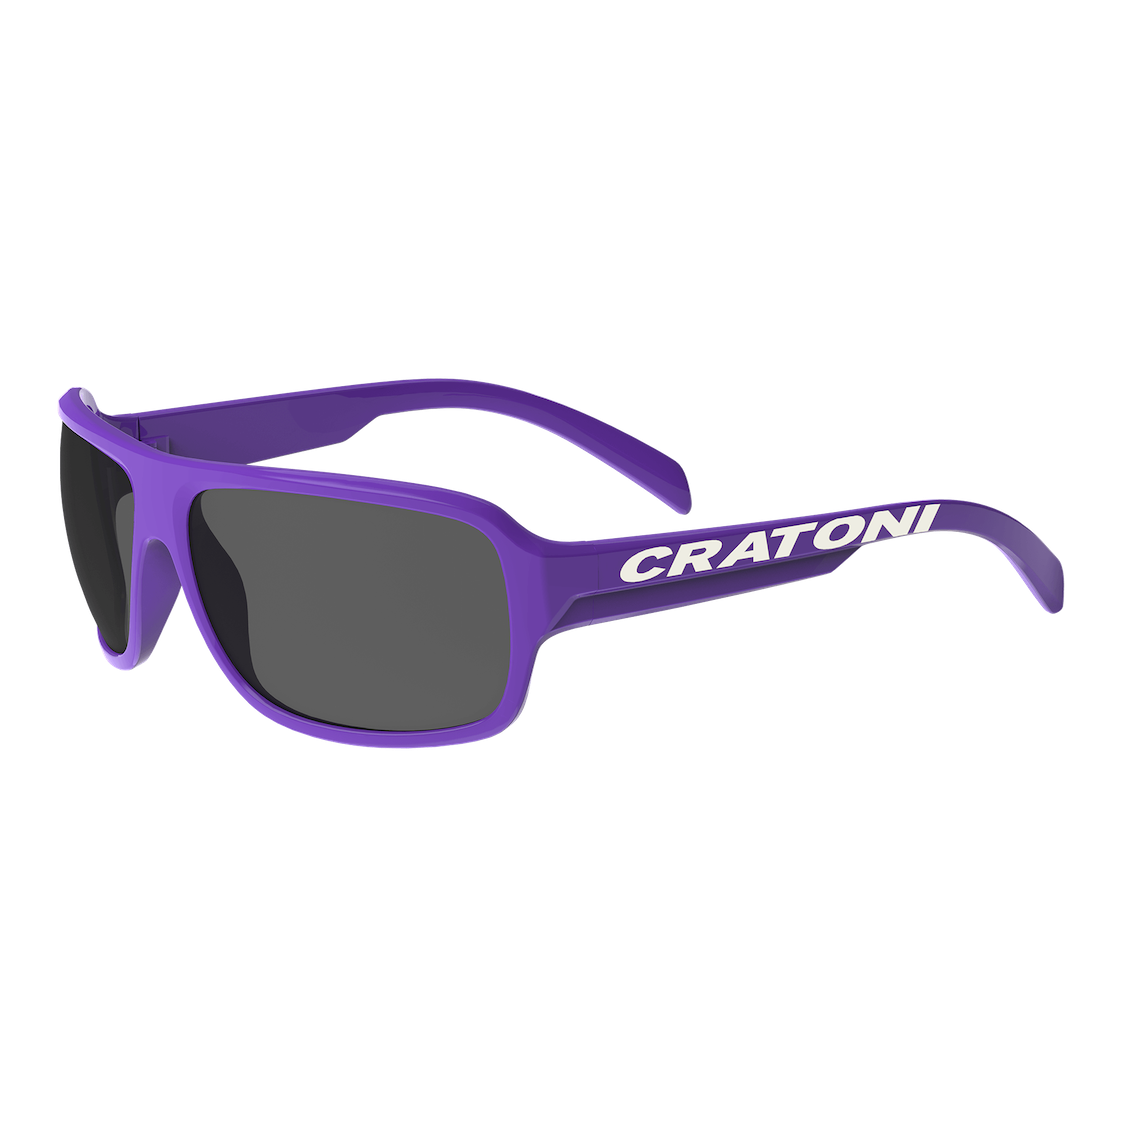 фото Детские очки cratoni c-ice jr purple glossy